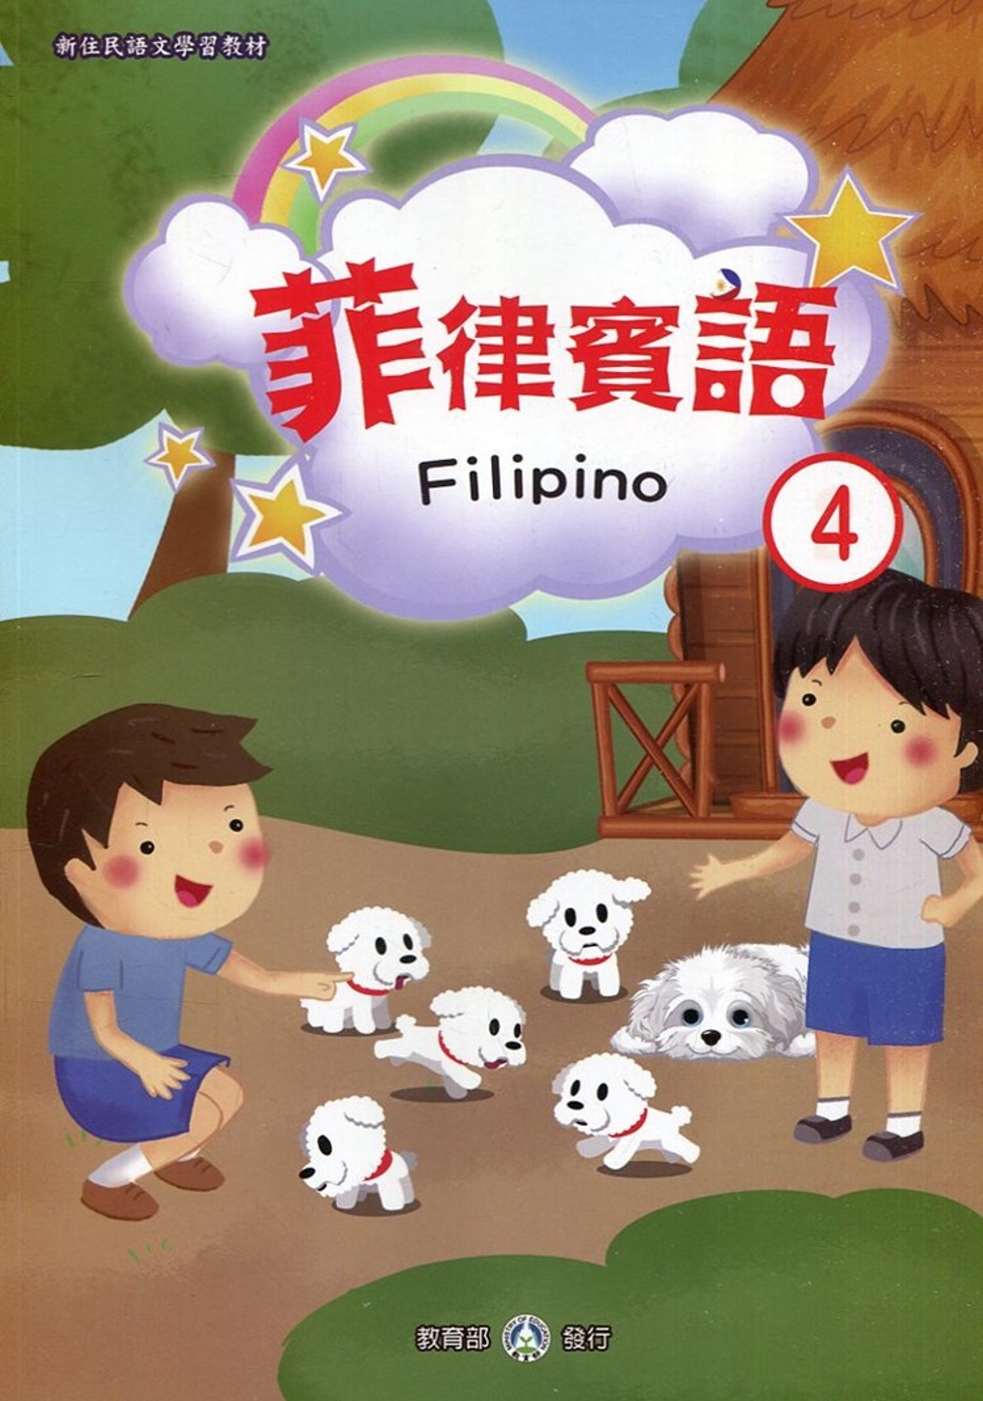 新住民語文學習教材菲律賓語第4冊(二版)